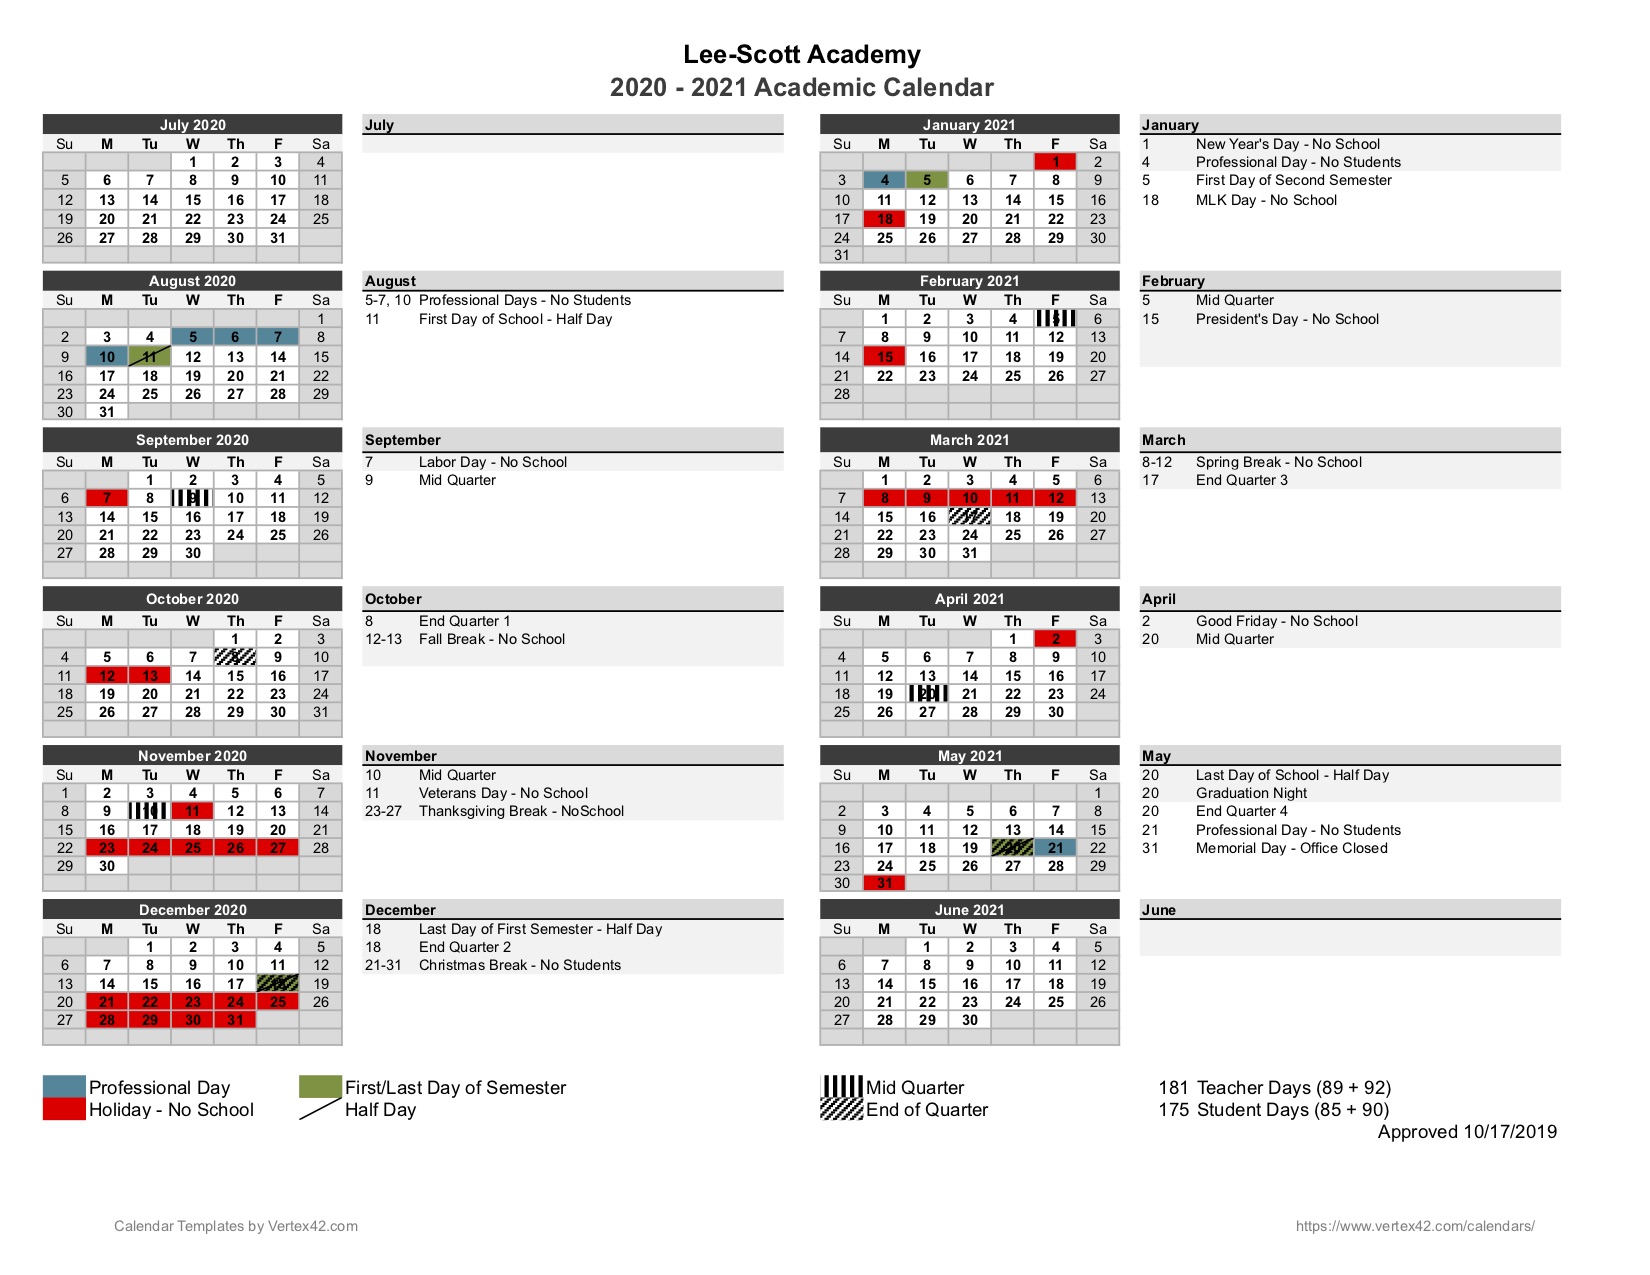 university alabama 2021 calendar Academic Calendar Lee Scott Academy university alabama 2021 calendar